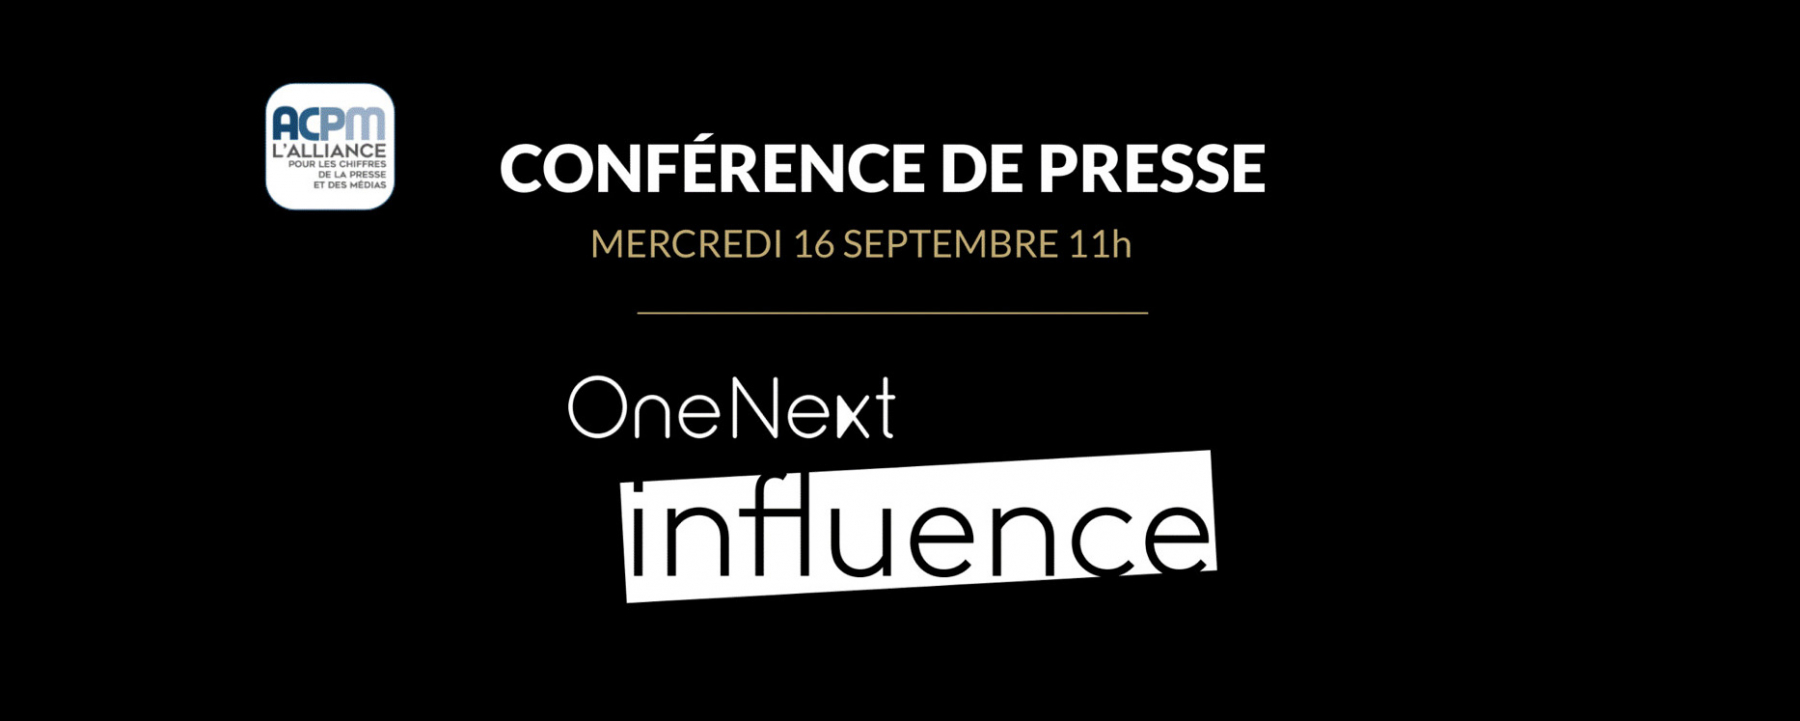 Conférence de Presse OneNext Influence, un événement organisé par l'ACPM le 16 septembre